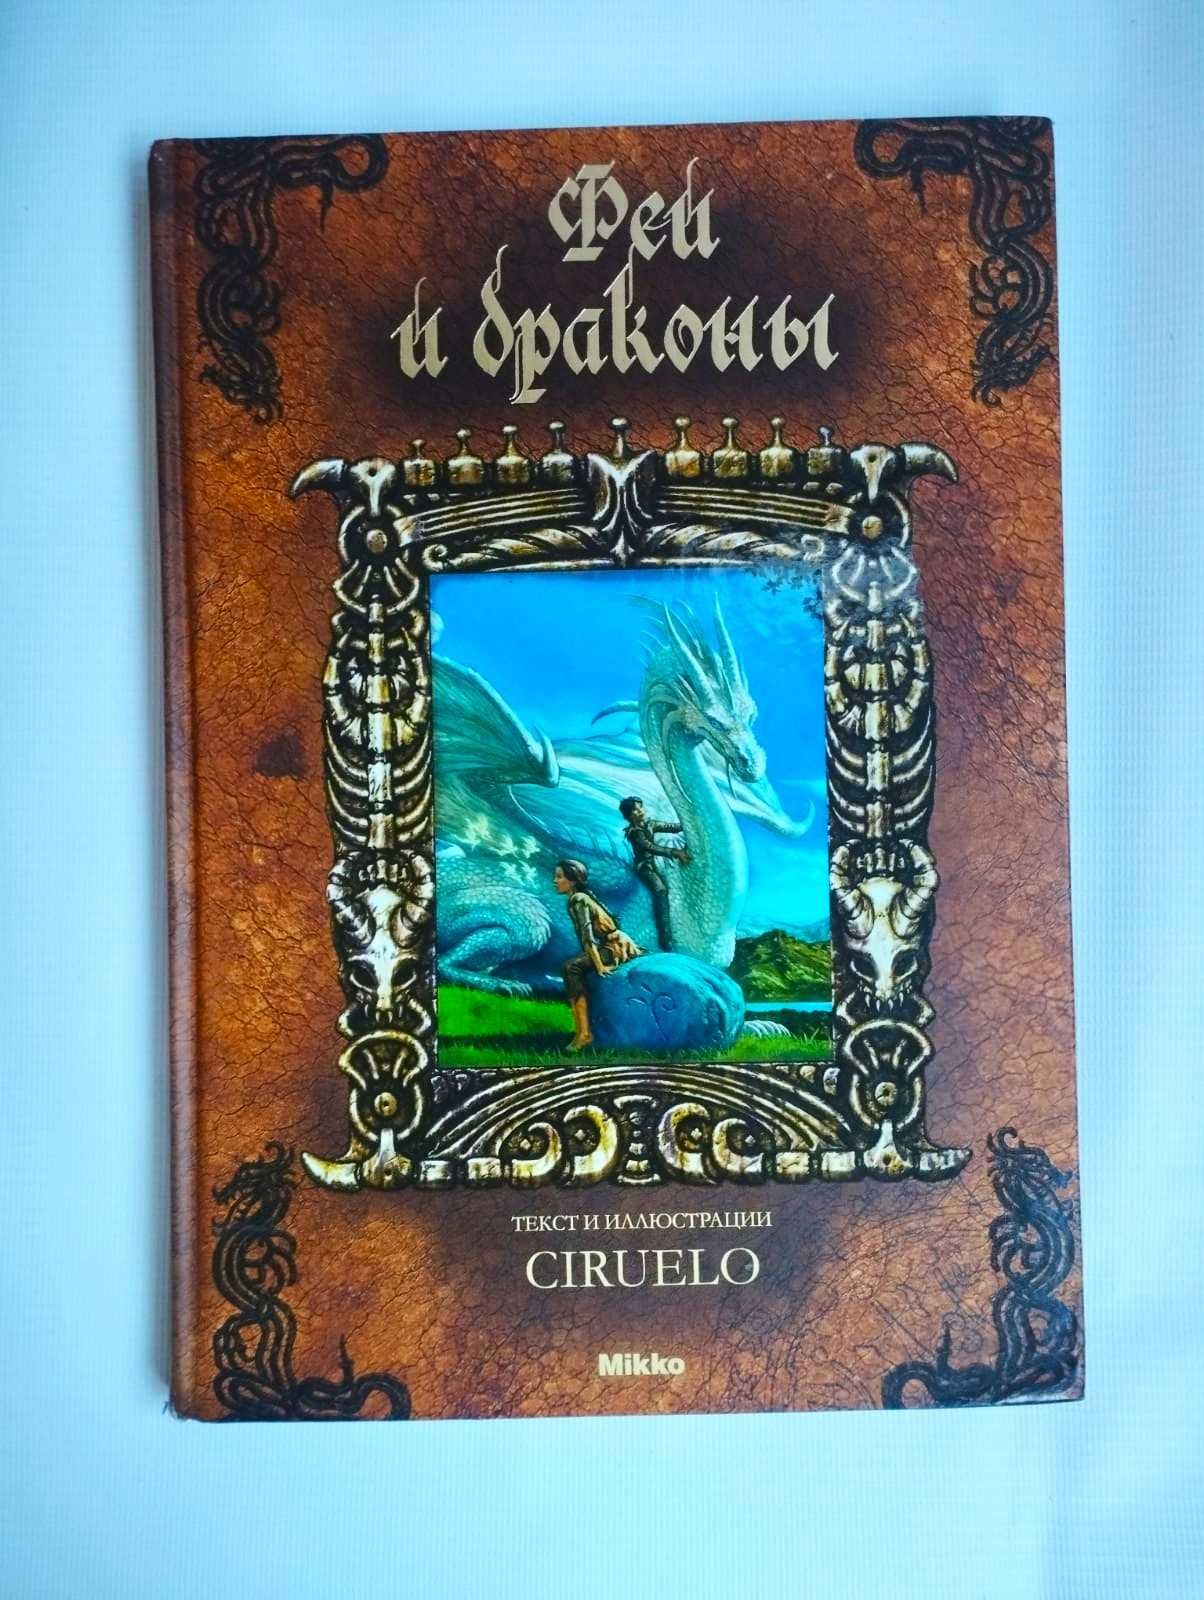 Книга «Феи и драконы». Автор:  Кабрал Сируелло.128 стр. 30х21 см.